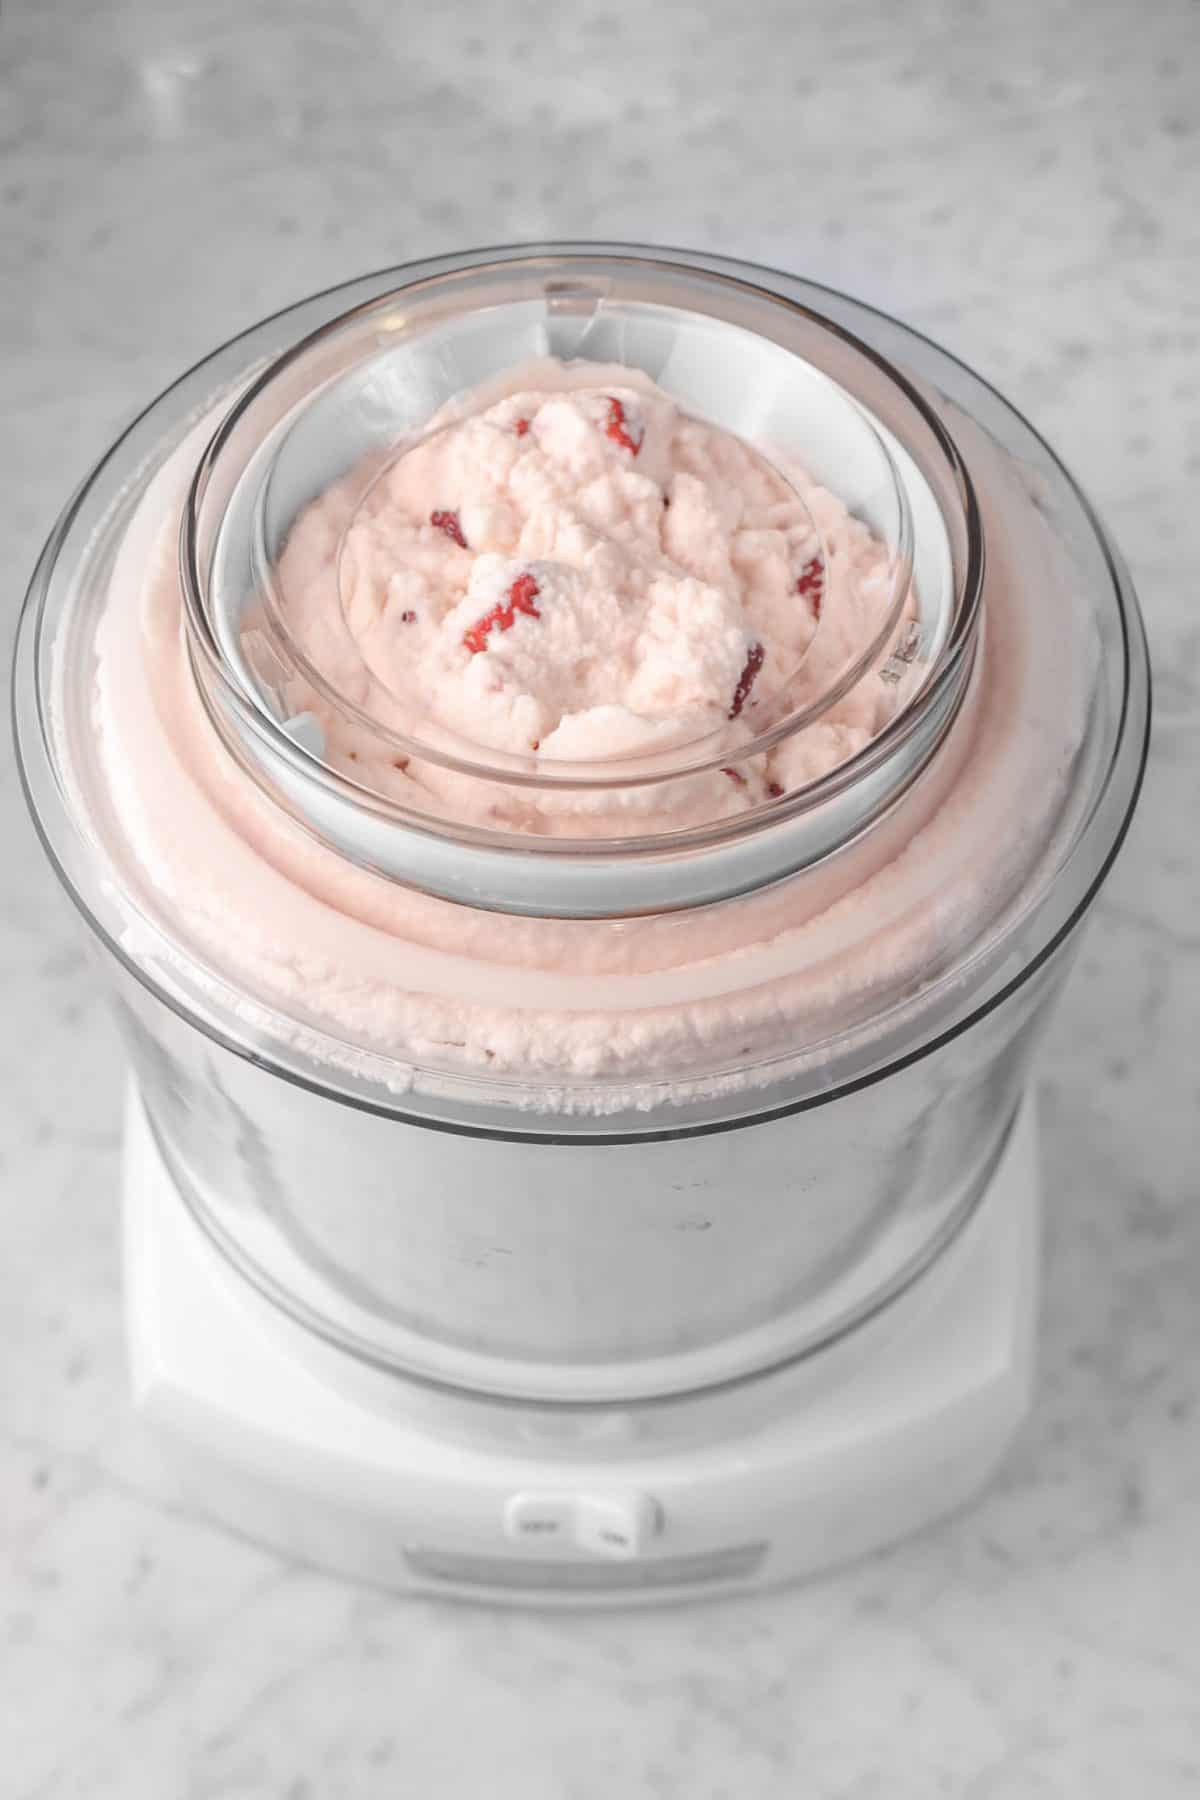 strawberry ice cream in a white ice cream maker